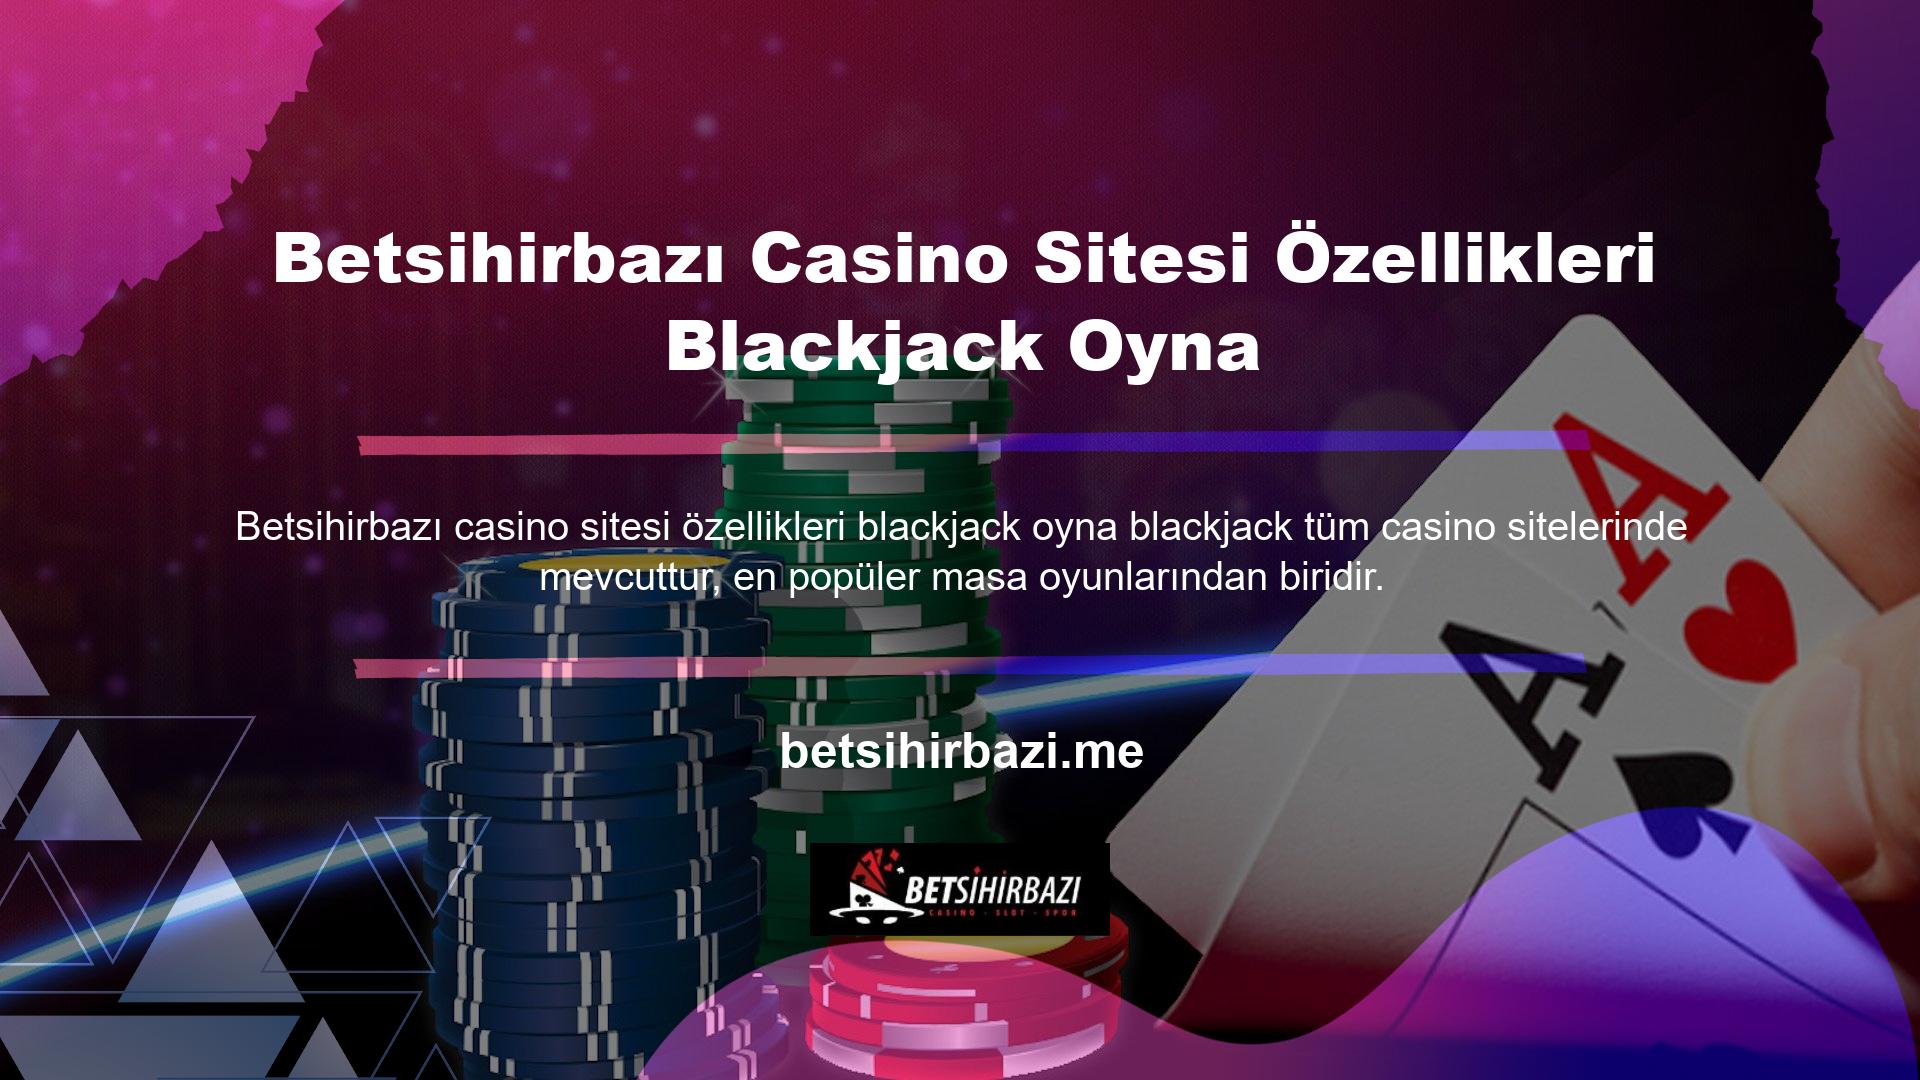 Blackjack, ülkemizdeki en popüler ve kazançlı oyunlardan biridir